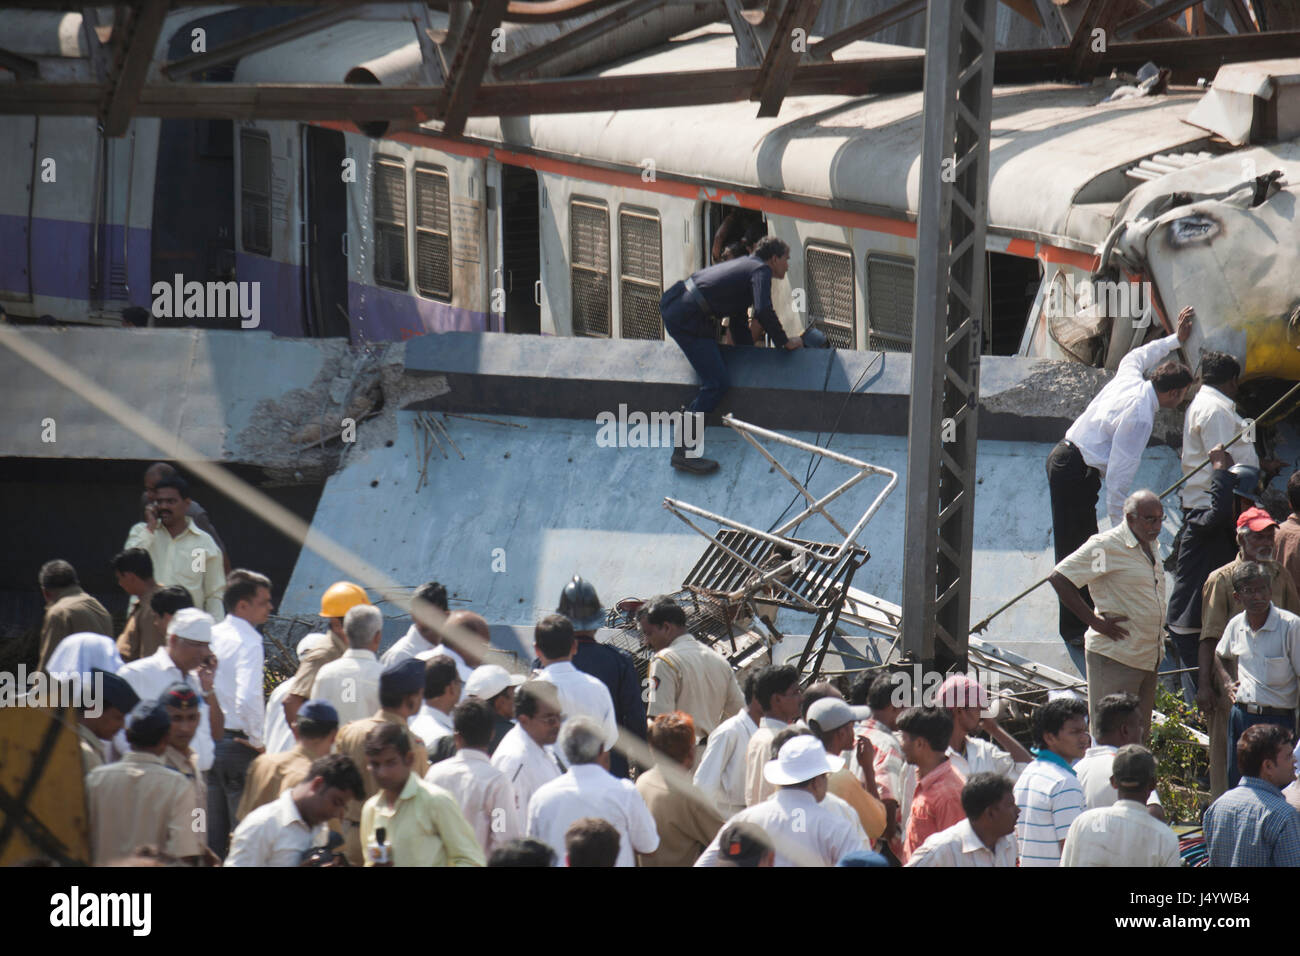 Les gens se réunissent au cours de l'eau s'est effondré au cours de train en mouvement, thane, Maharashtra, Inde, Asie Banque D'Images